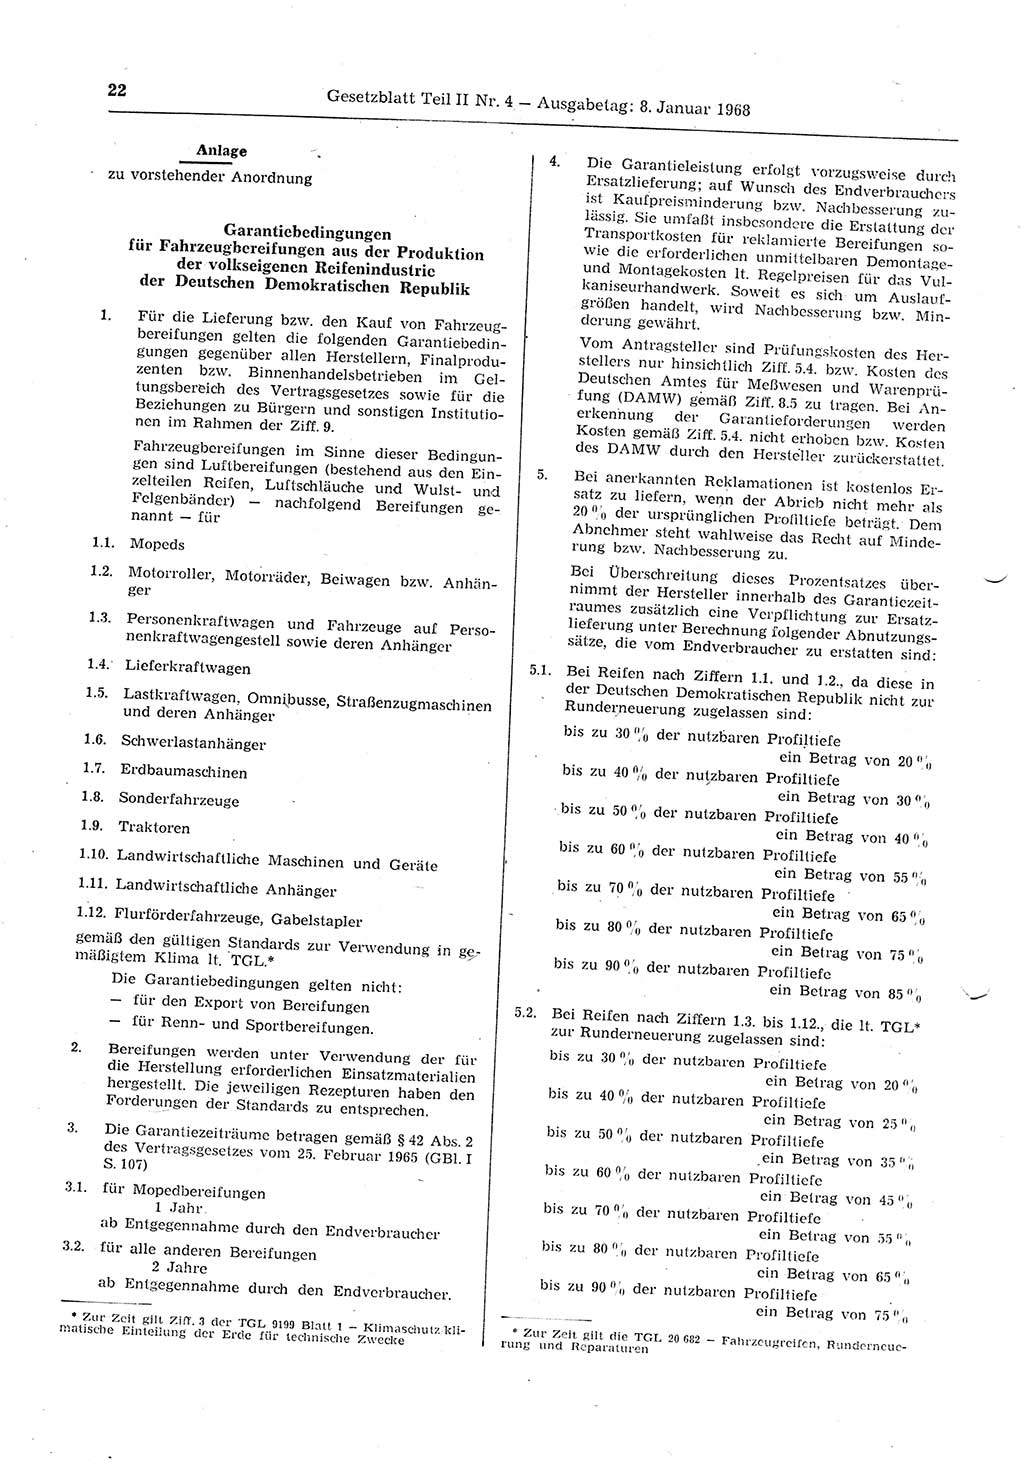 Gesetzblatt (GBl.) der Deutschen Demokratischen Republik (DDR) Teil ⅠⅠ 1968, Seite 22 (GBl. DDR ⅠⅠ 1968, S. 22)